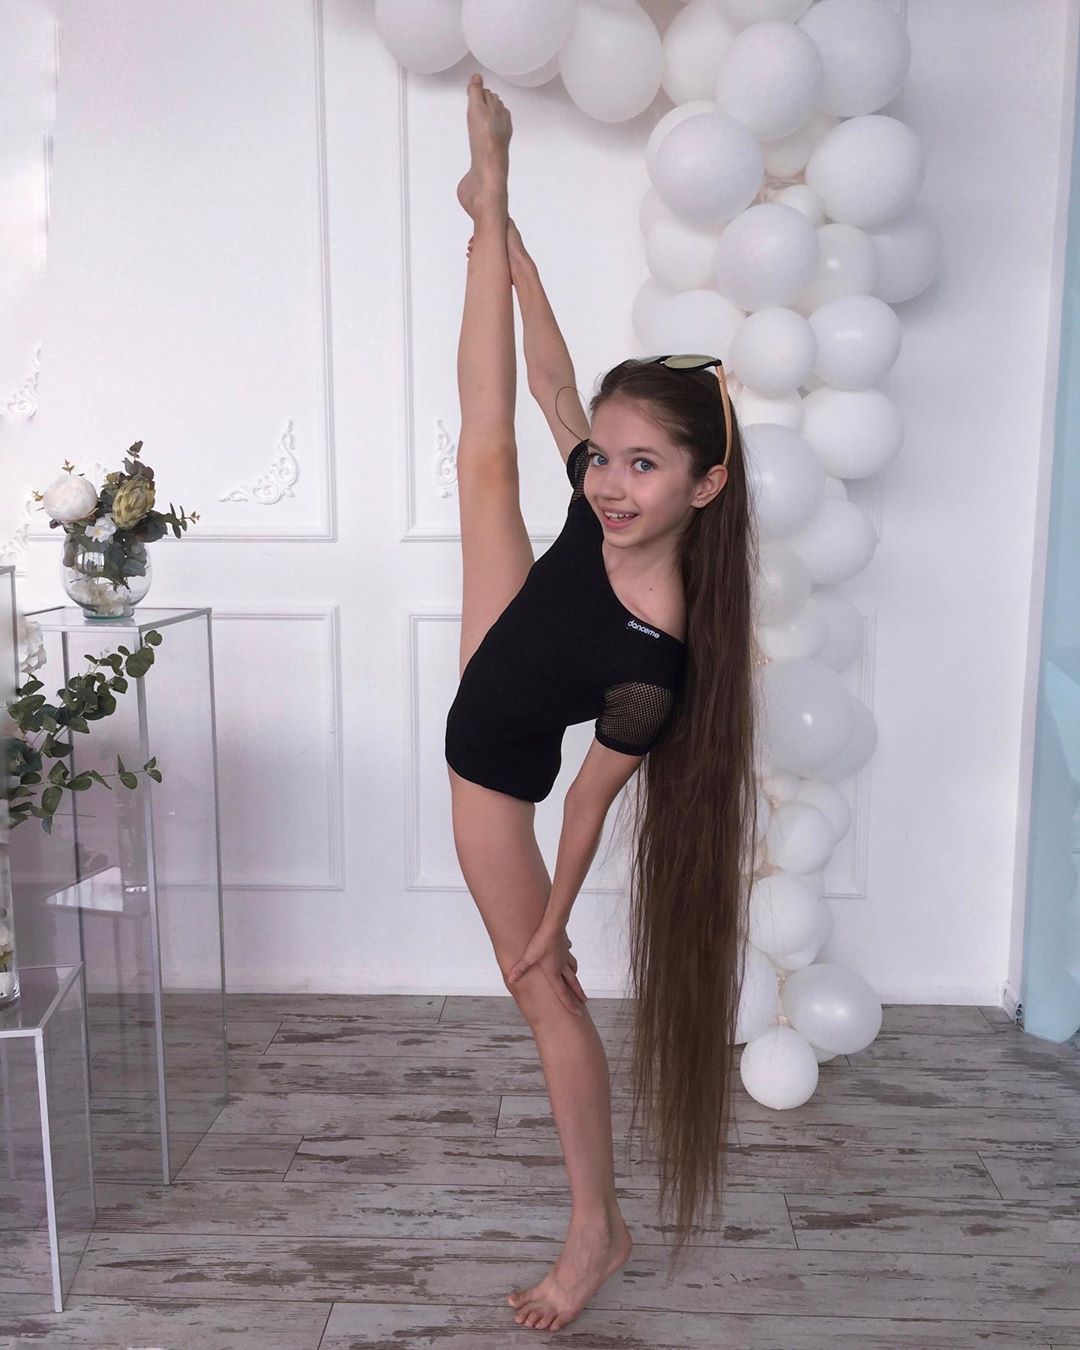 Dana Taranova Bio - Josephine Zharikova Bailarina de Ballet / Diana terranova age, height, net ...